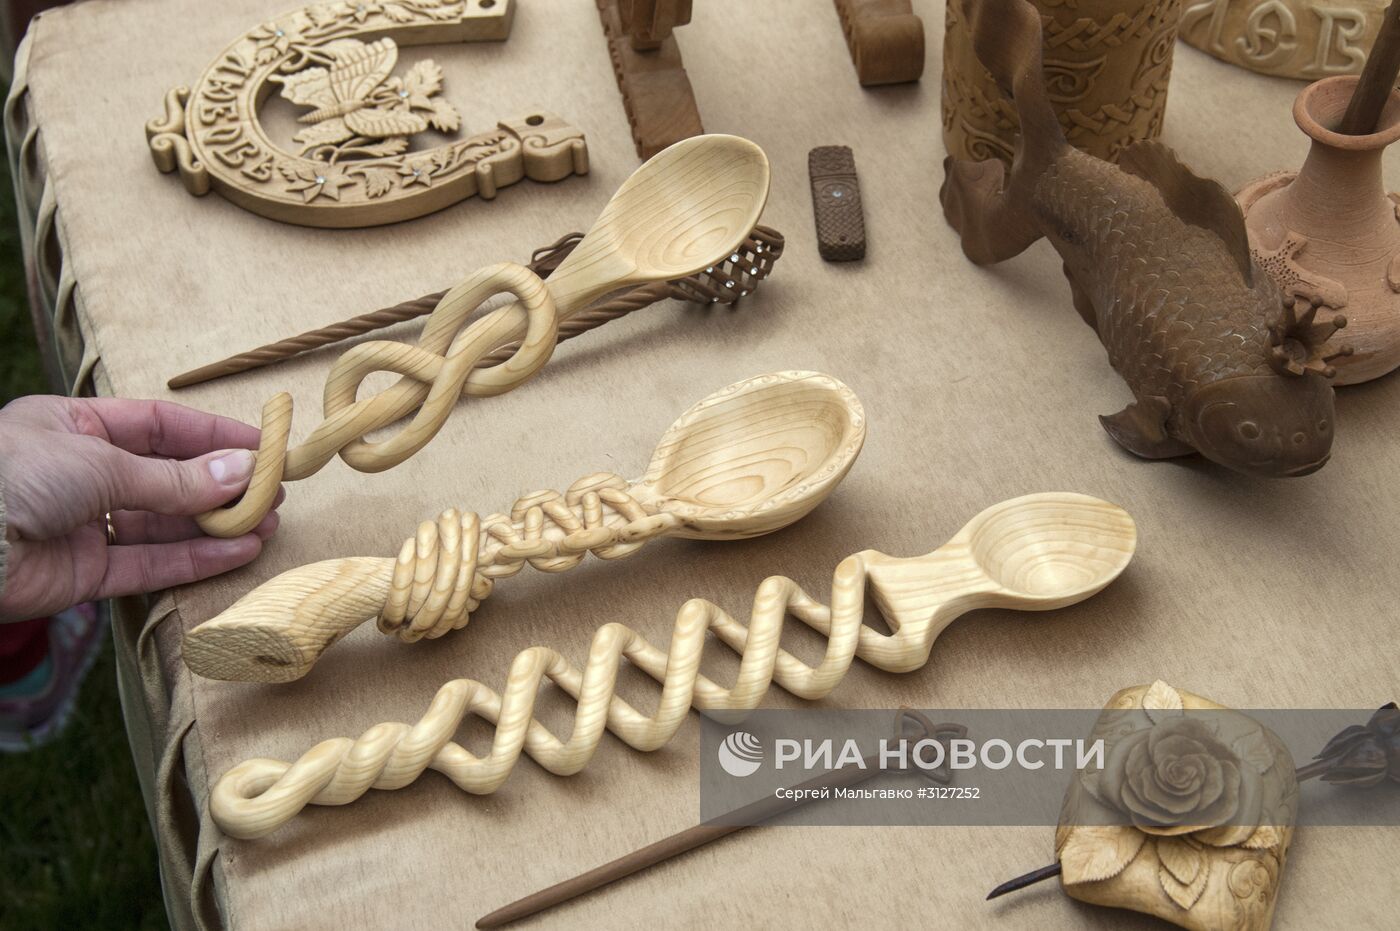 Фестиваль народности и исторических реконструкций "Маланья" в Белгородской области